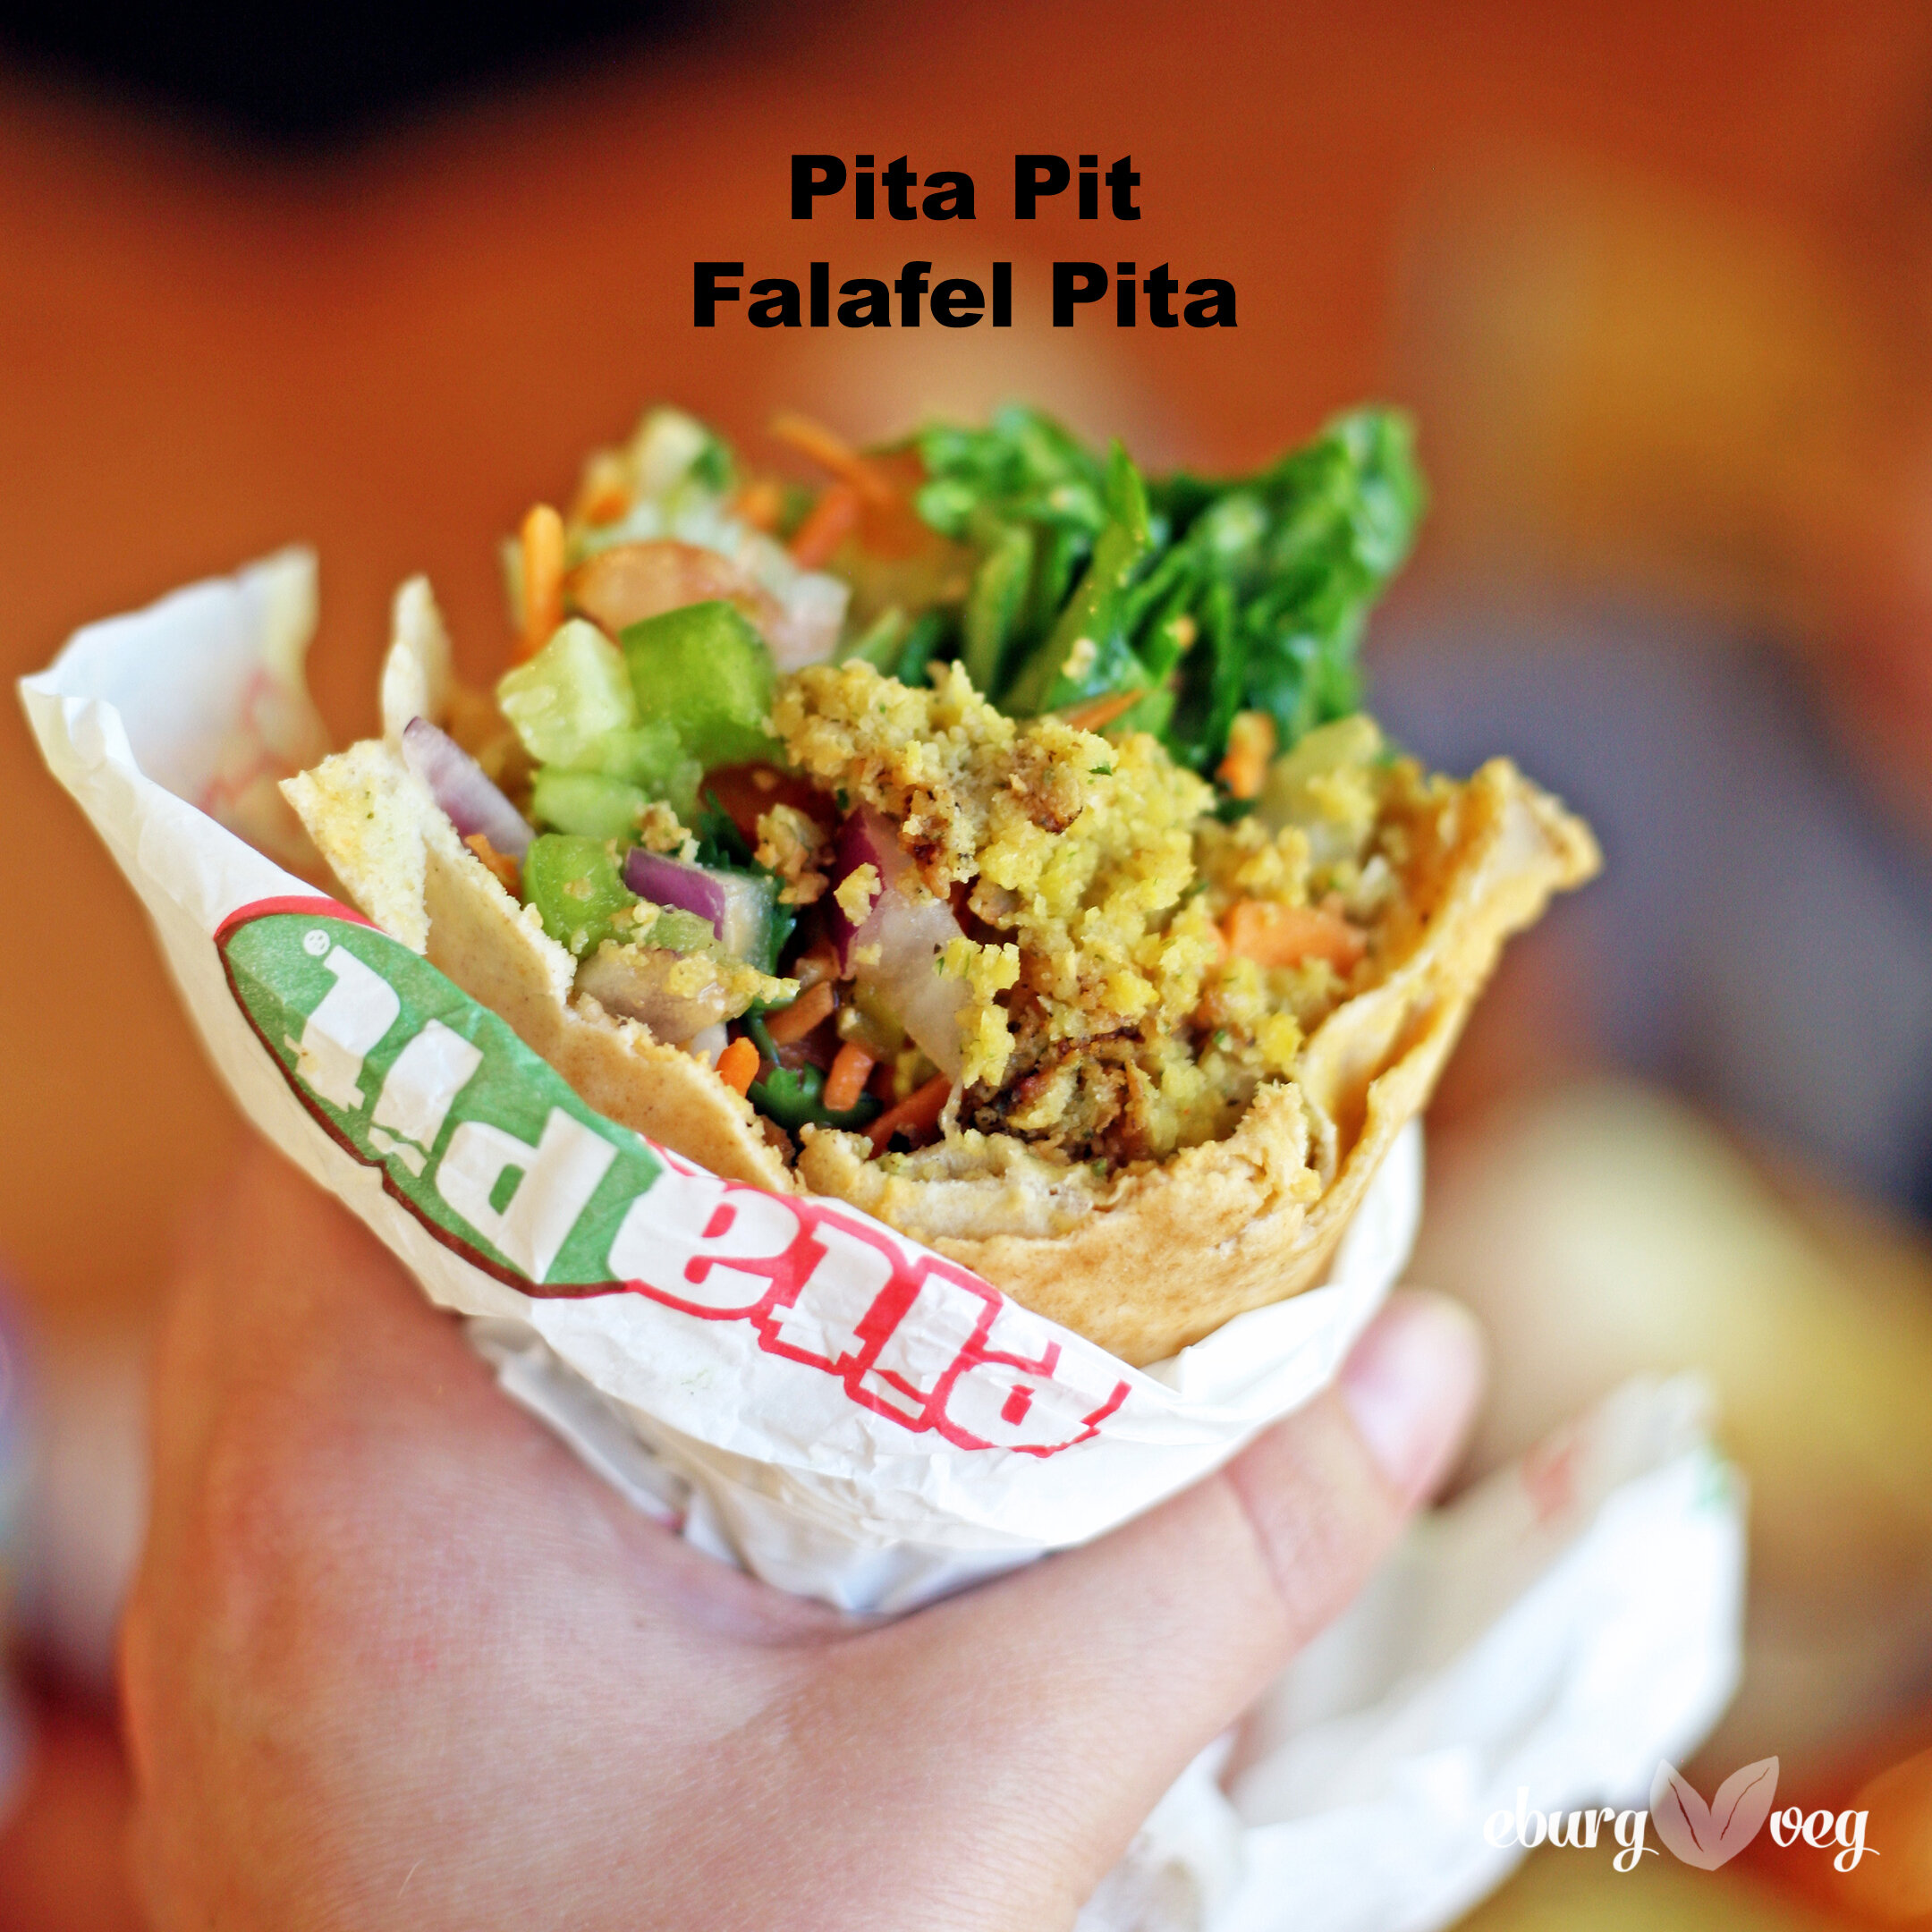 Pita Pit Falafel Pita.jpg